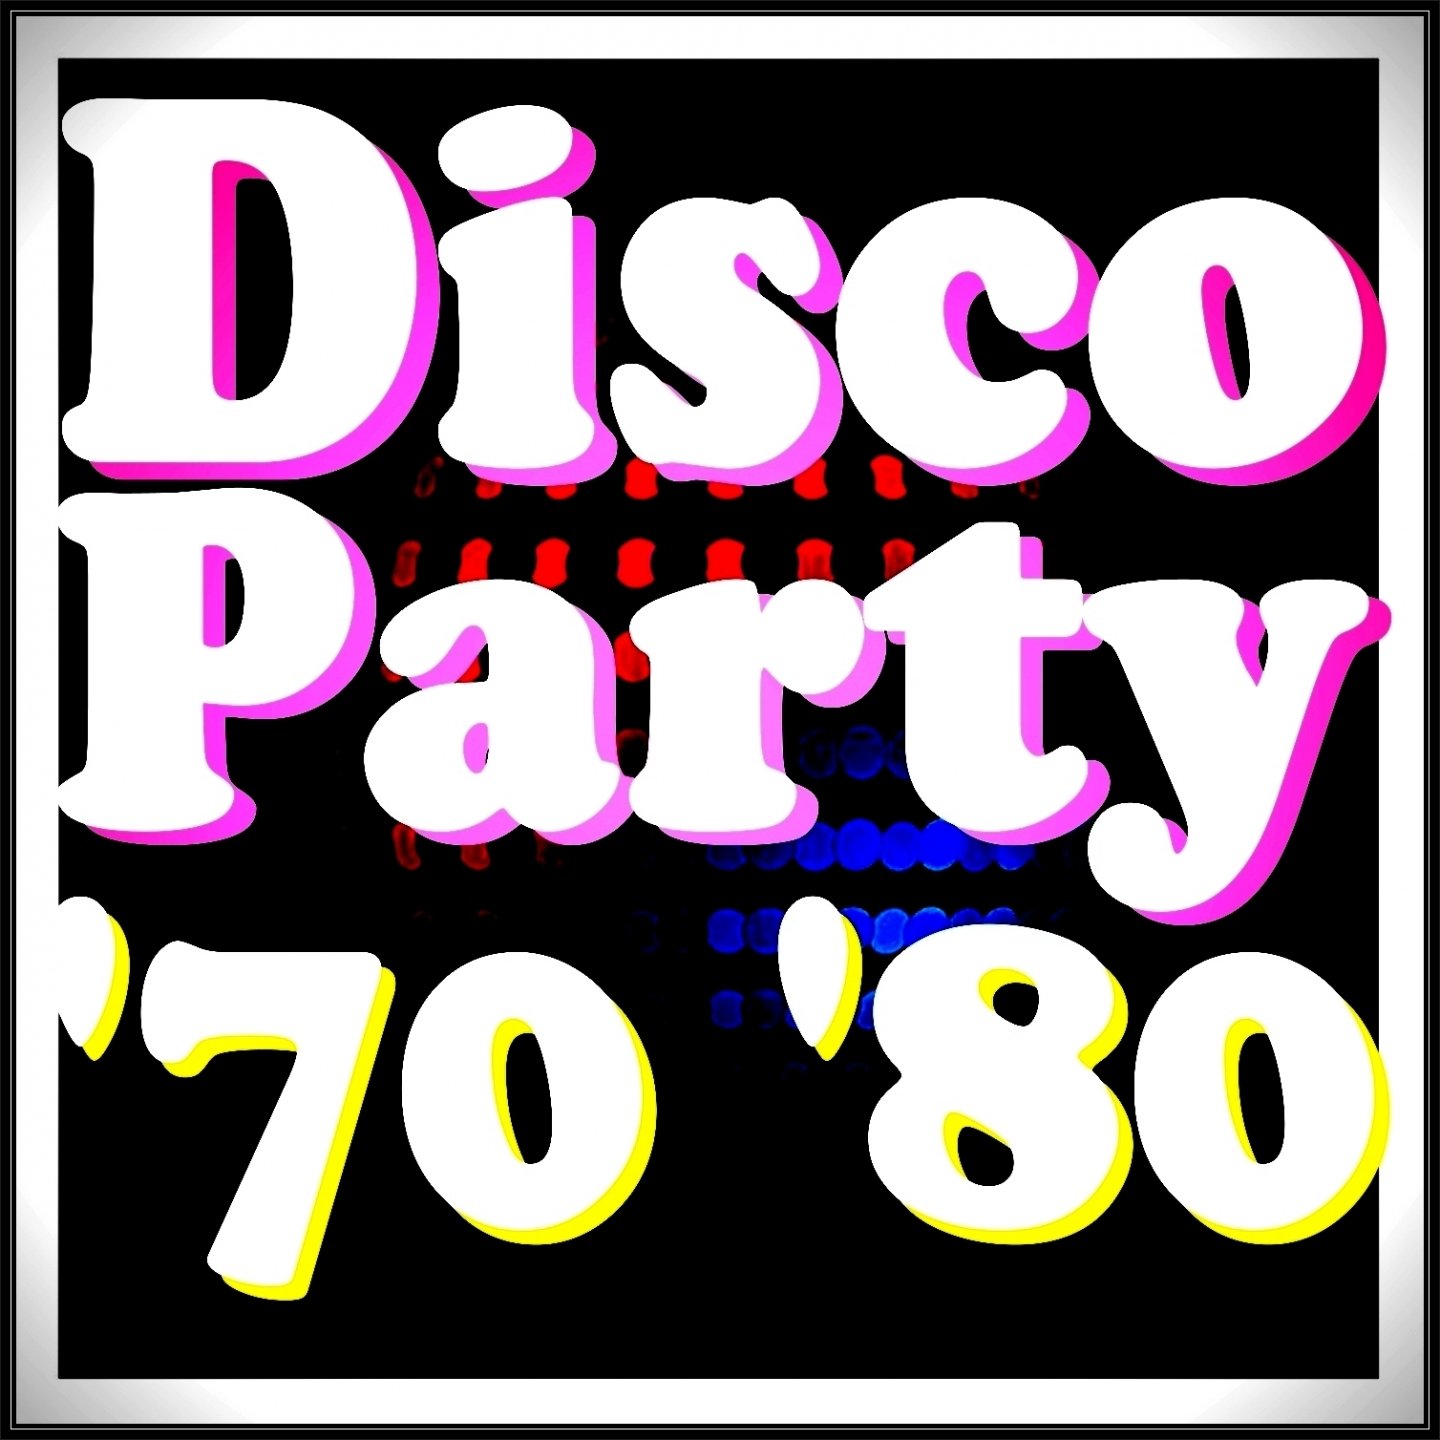 Disco disco party party remix. DJ Disco 70. 70 Disco albums. Disco Party. Disco Party песня.